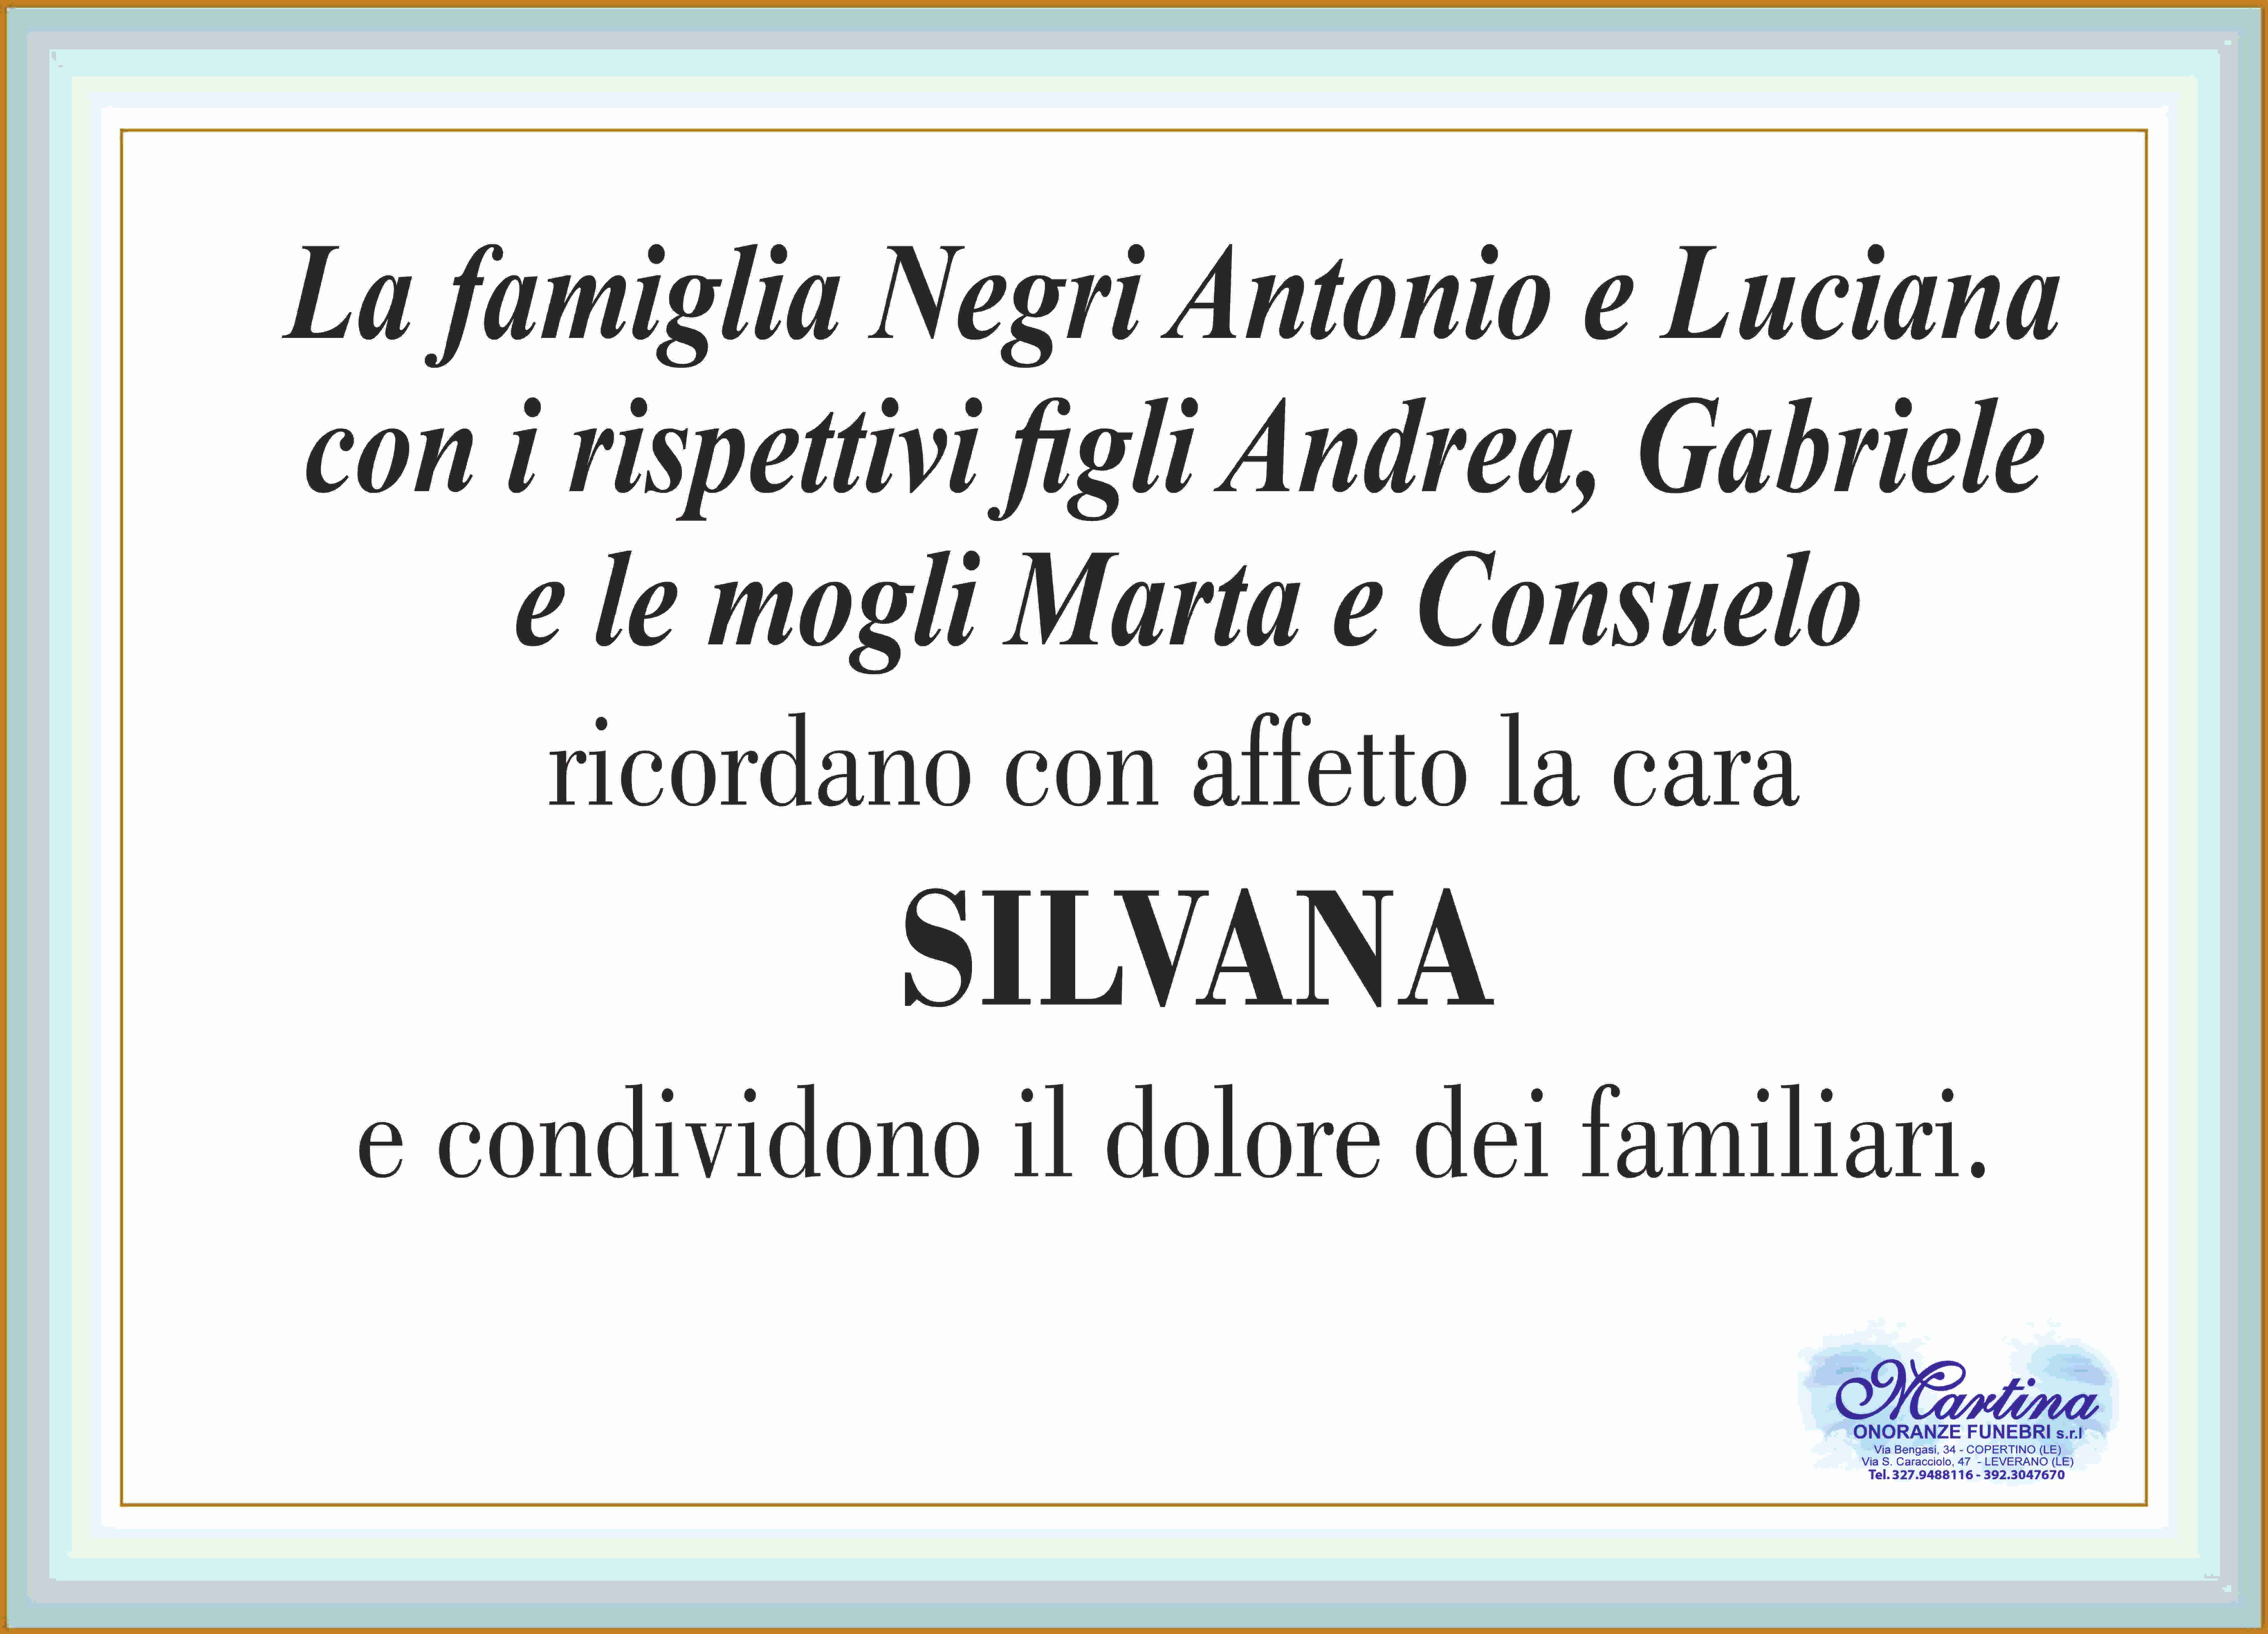 Silvana Greco